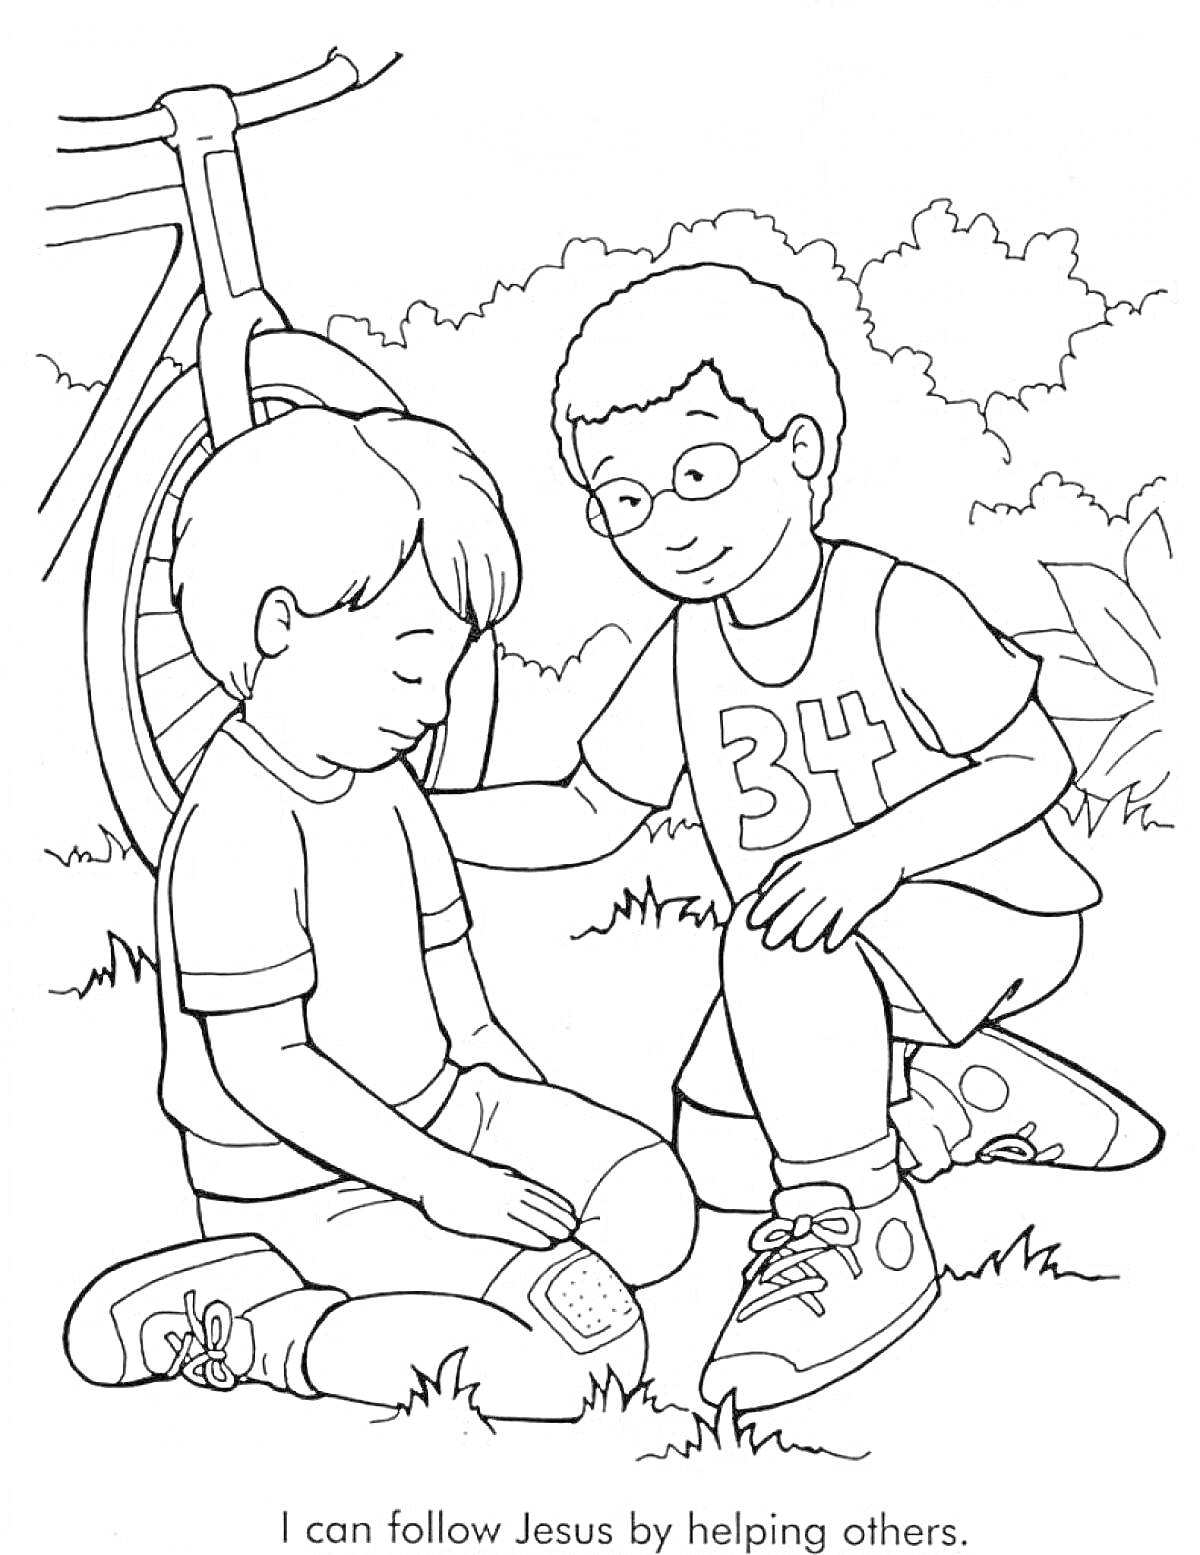 Раскраска Мальчик успокаивает другого мальчика с пластырем, сидящего на земле рядом с велосипедом